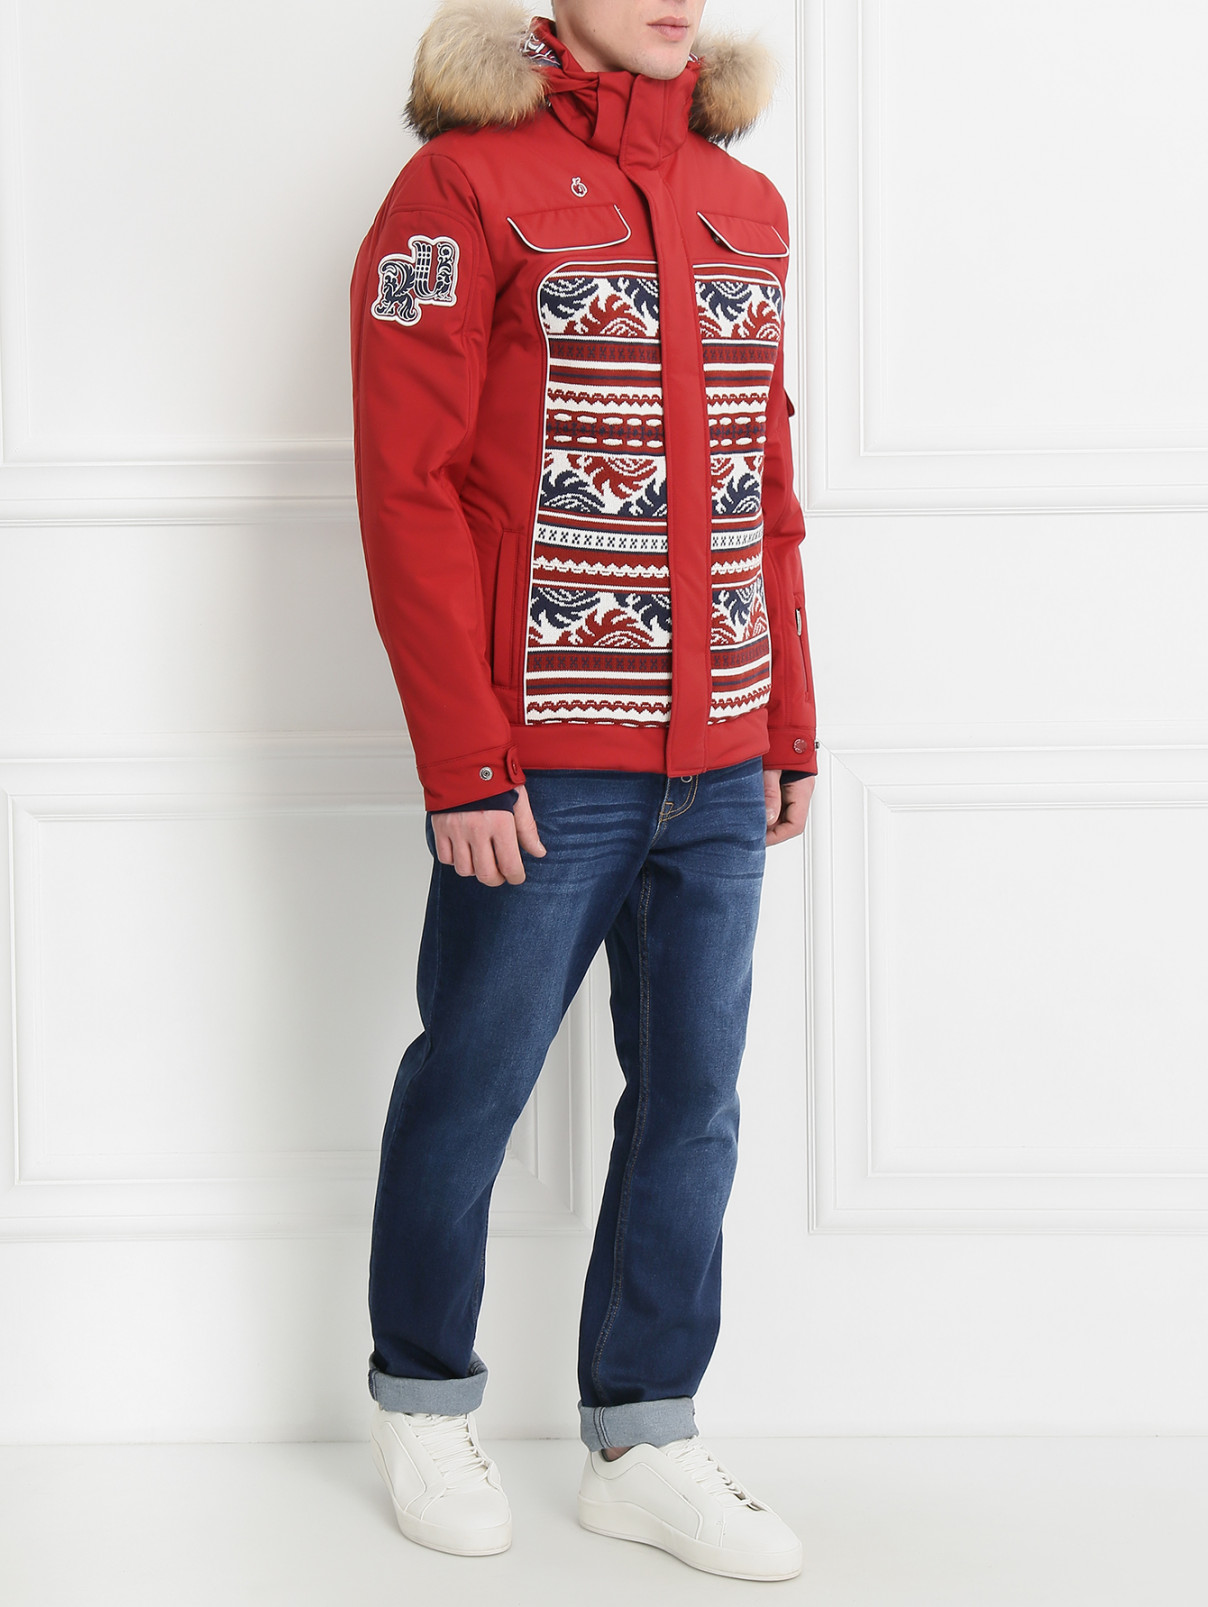 Куртка горнолыжная мужская BOSCO  –  Модель Общий вид  – Цвет:  Красный